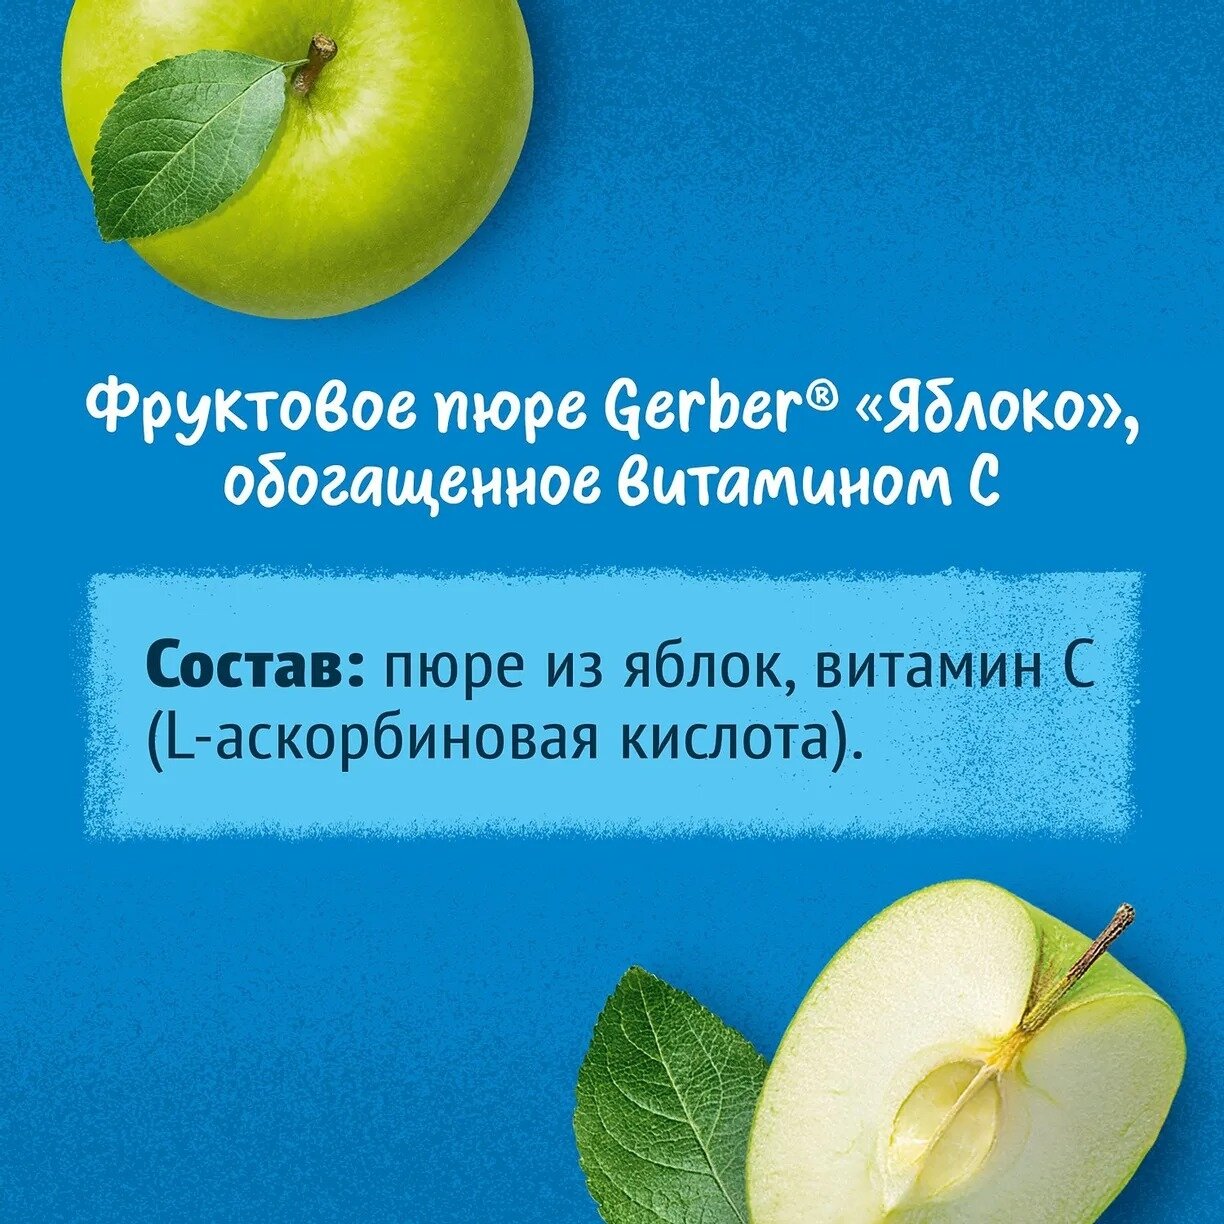 Пюре Gerber фруктовое Яблоко для первого прикорма с 4 мес 125 г (12 штук в упаковке)